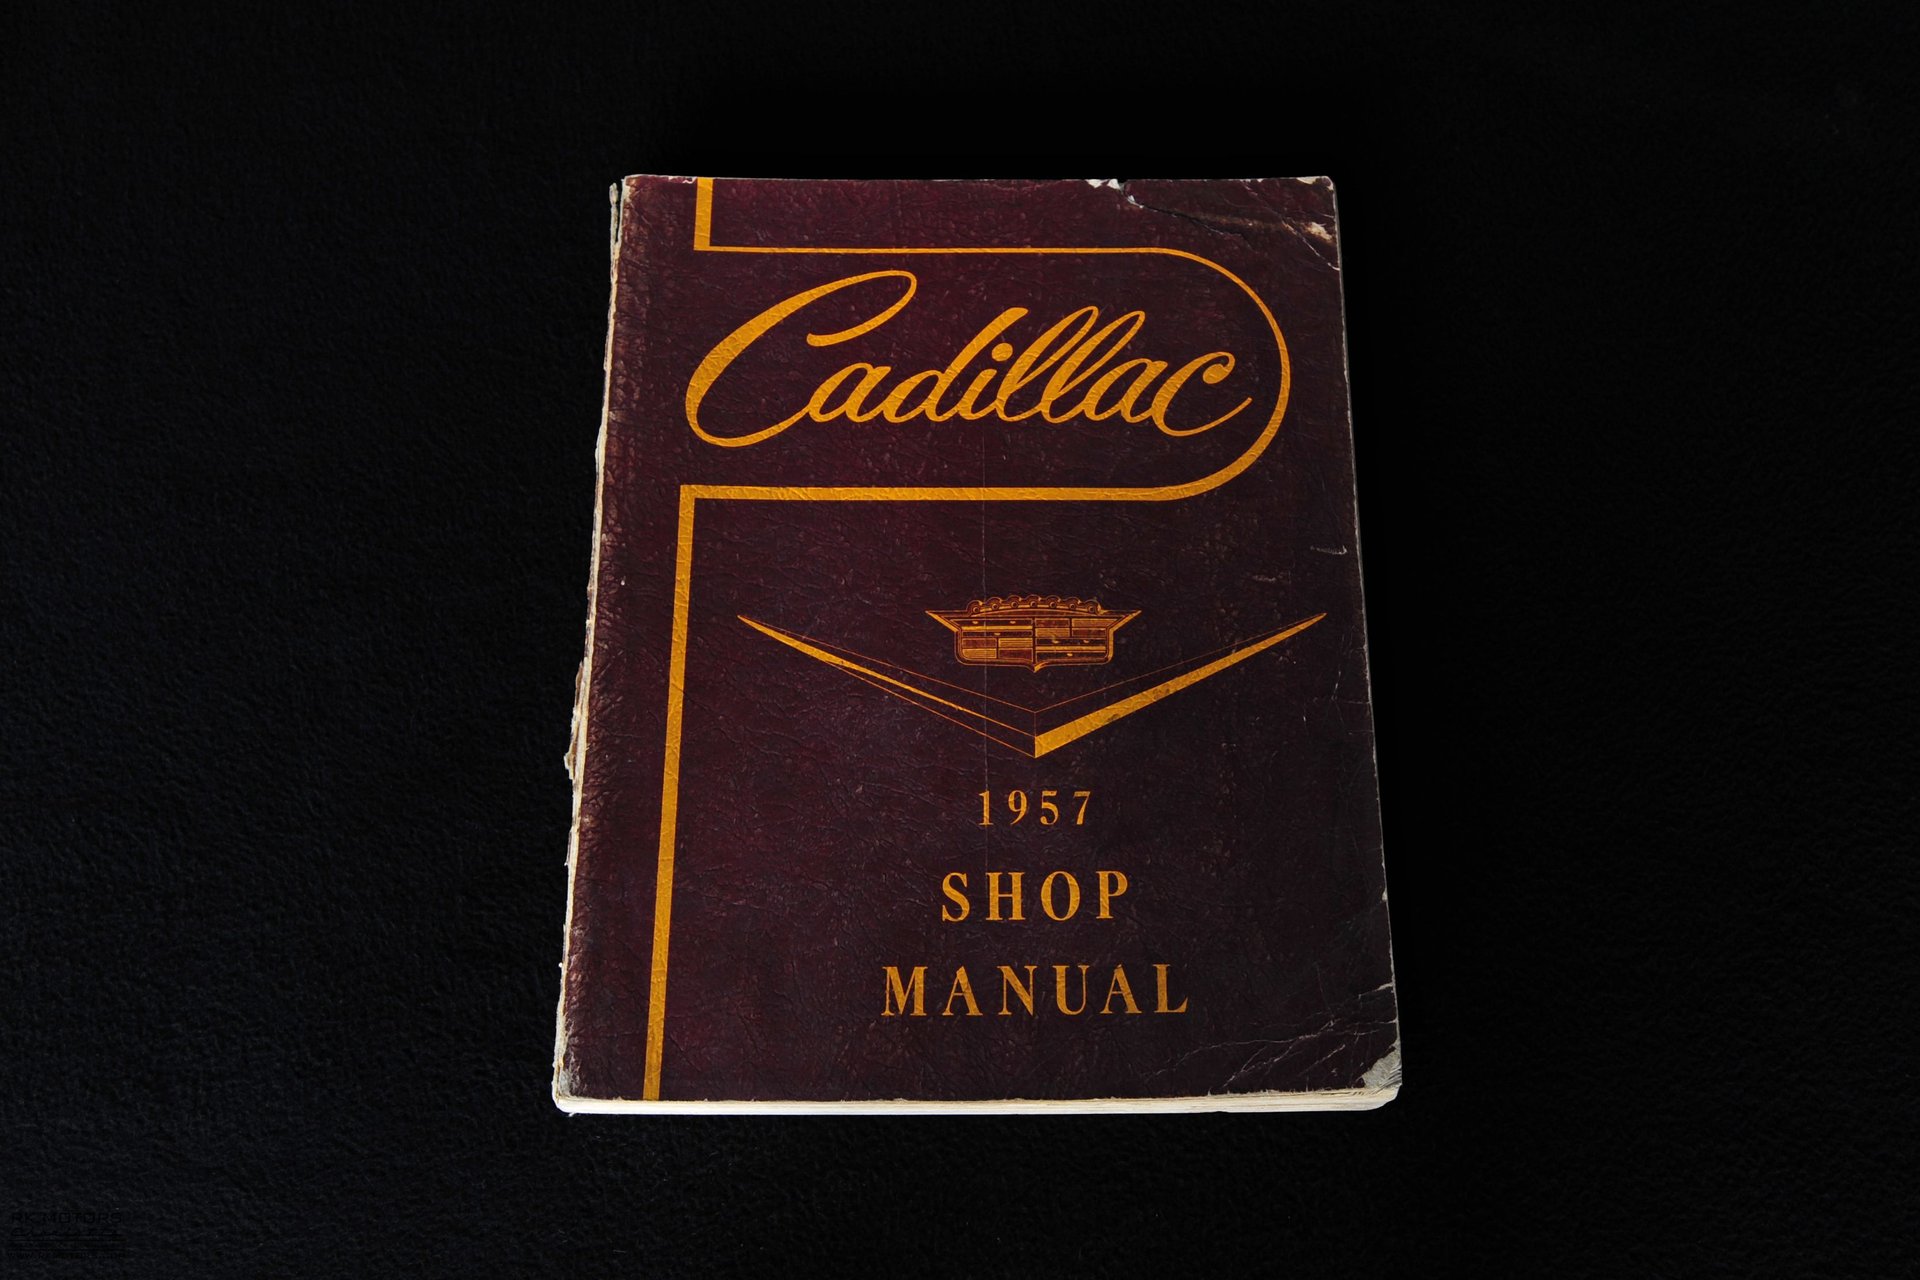 For Sale 1958 Cadillac Eldorado